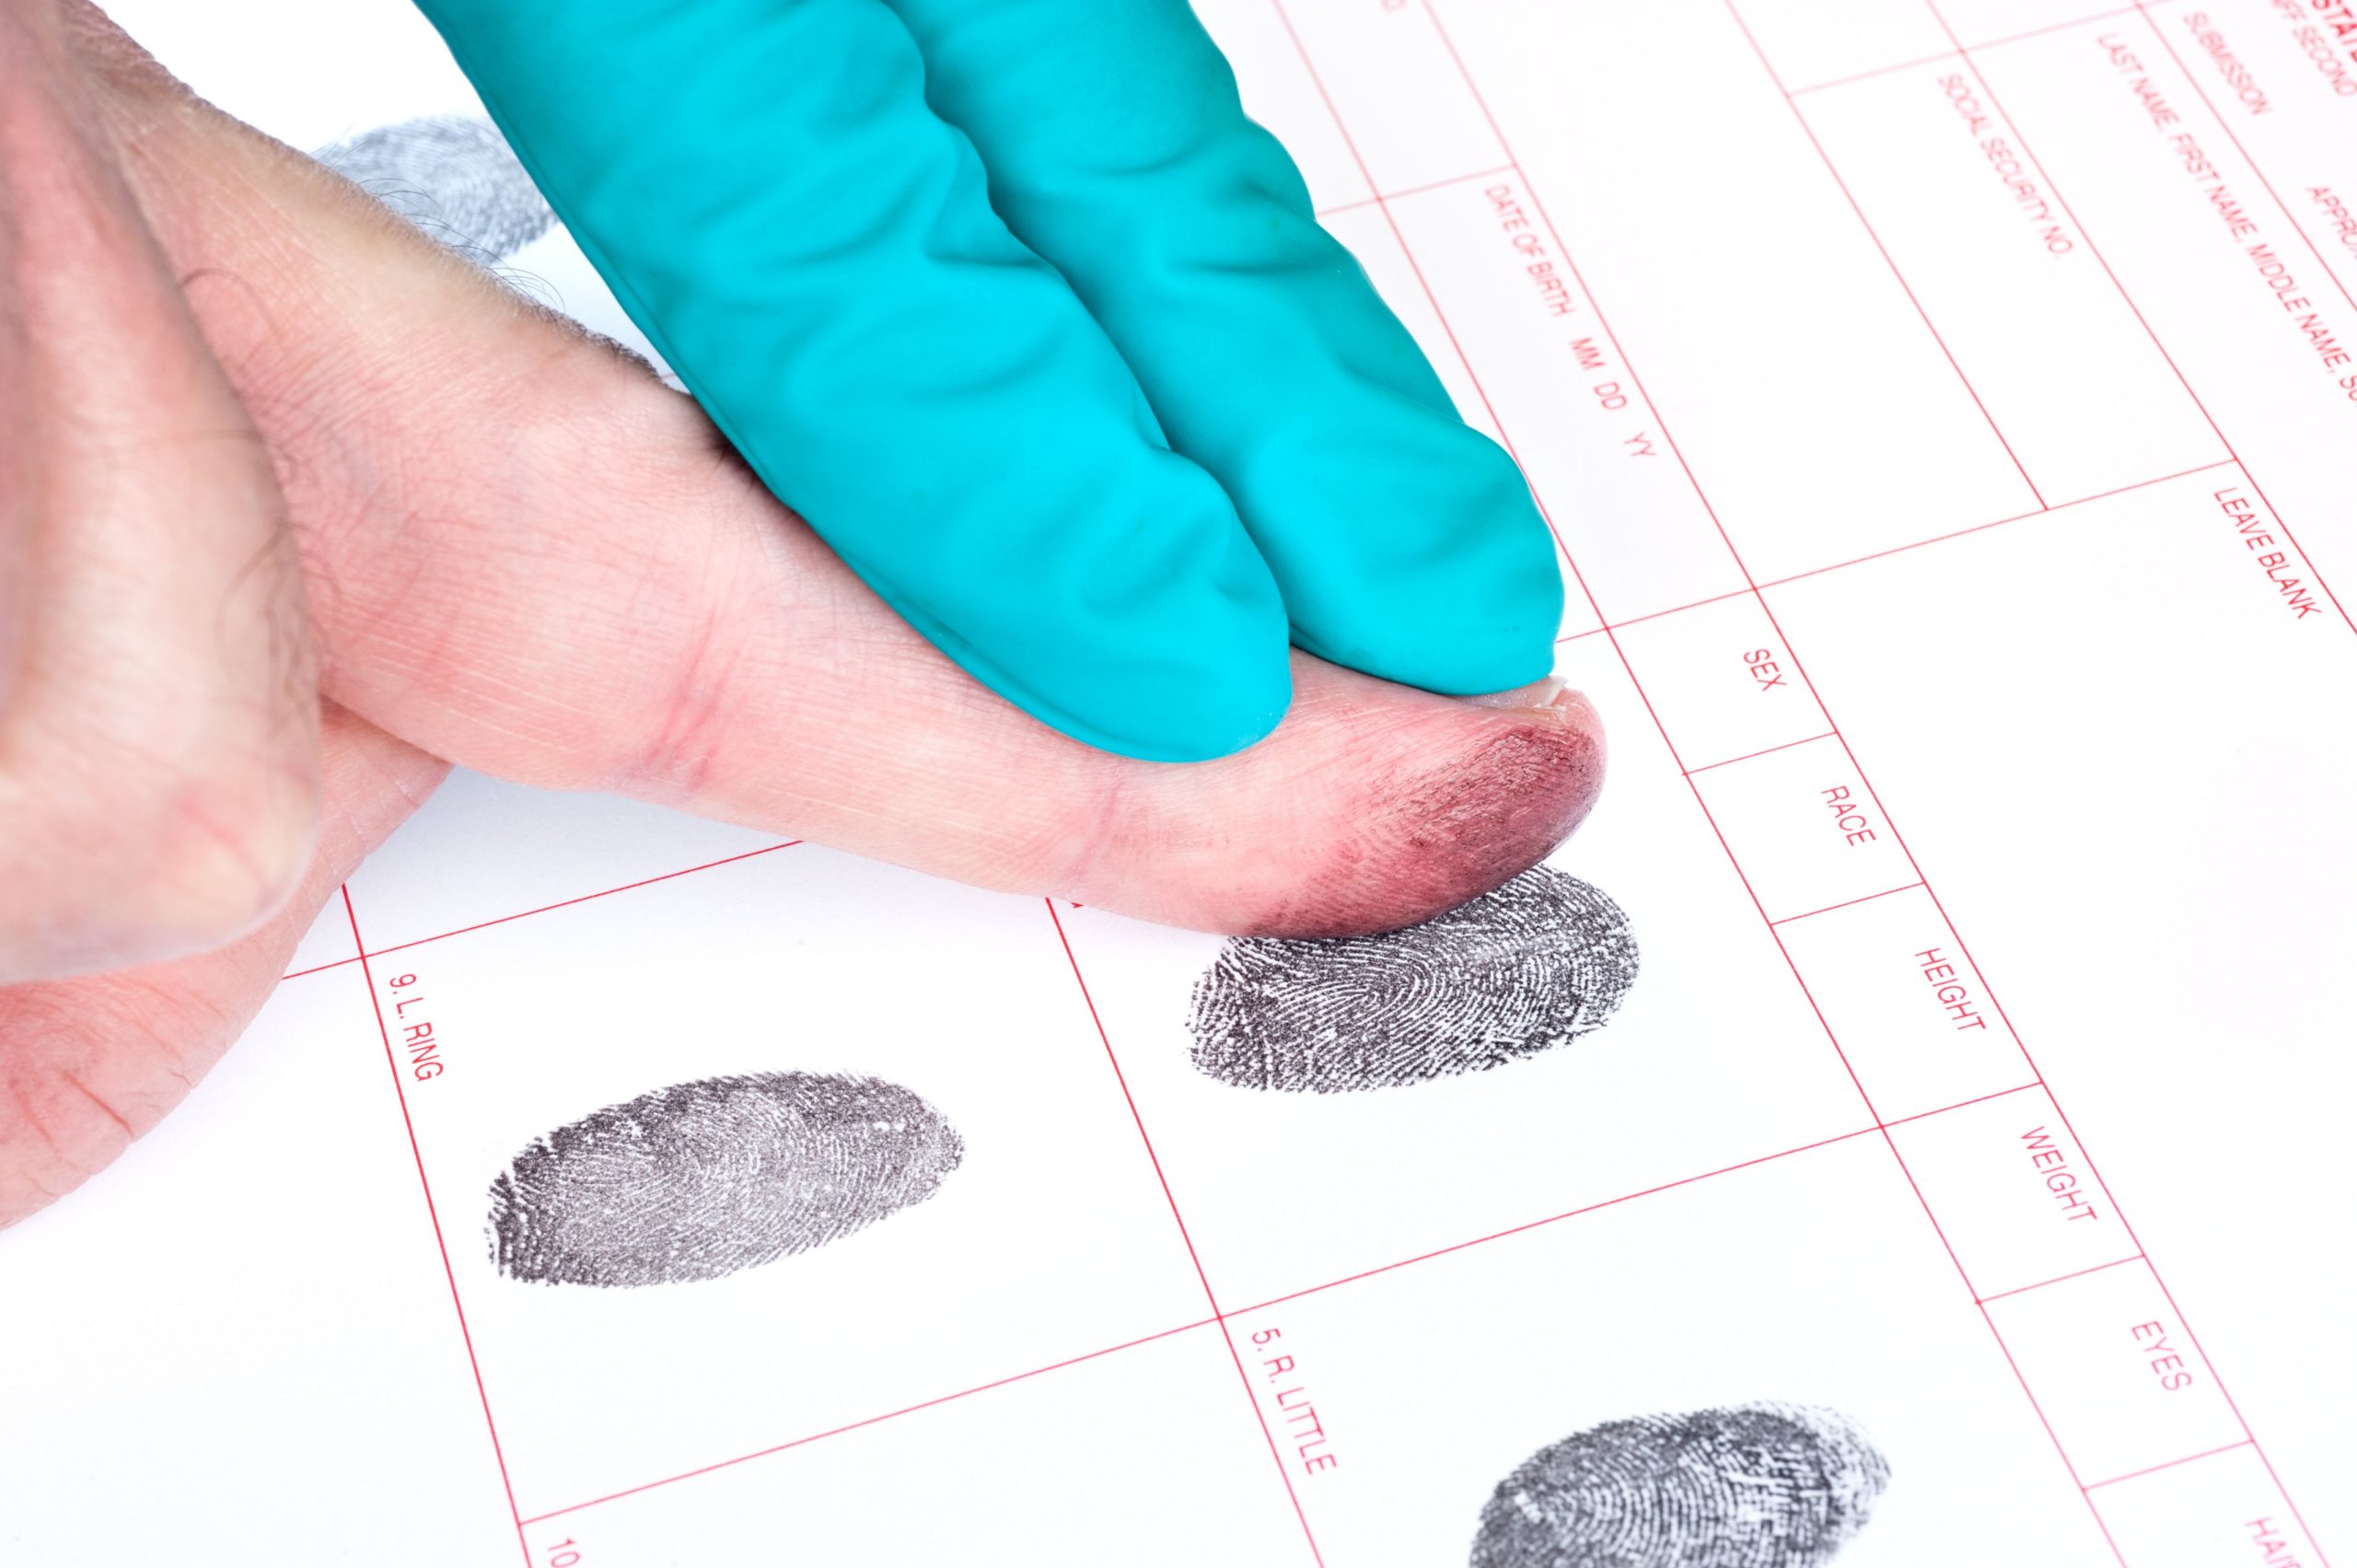 Man being fingerprinted